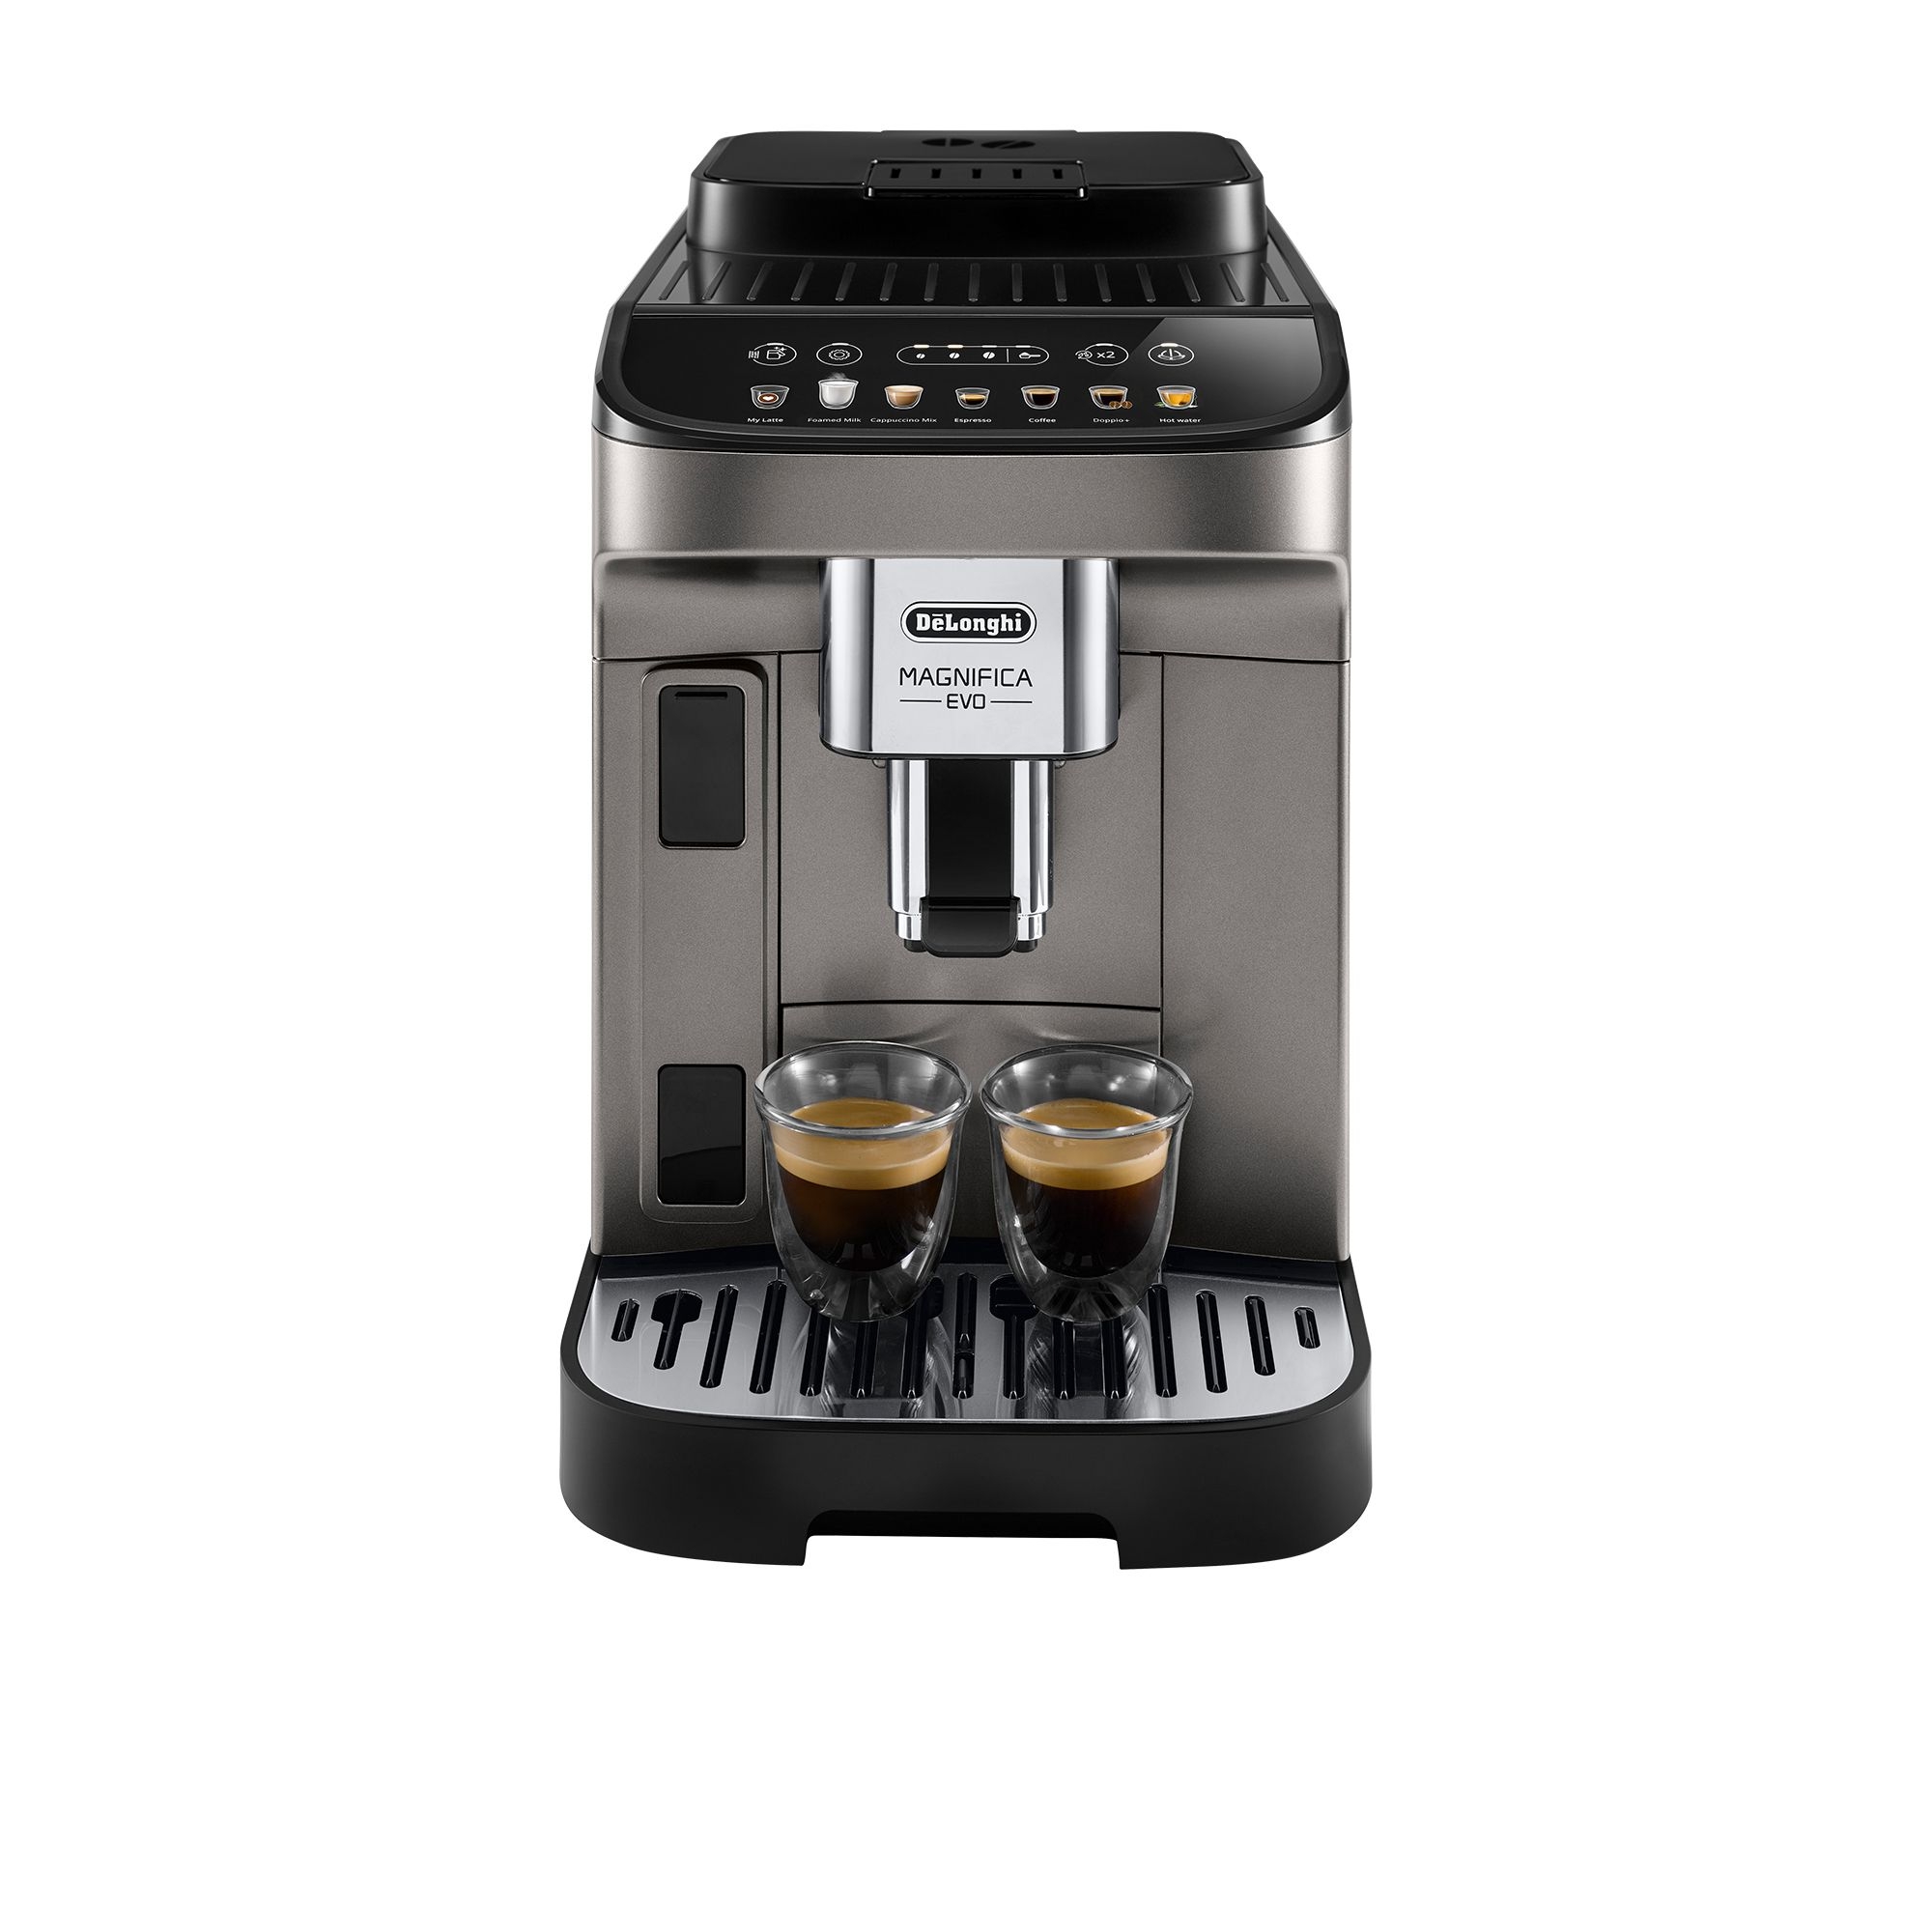 DeLonghi Magnifica Evo ECAM29083TB Fully Automatic Coffee Machine Titan Image 1